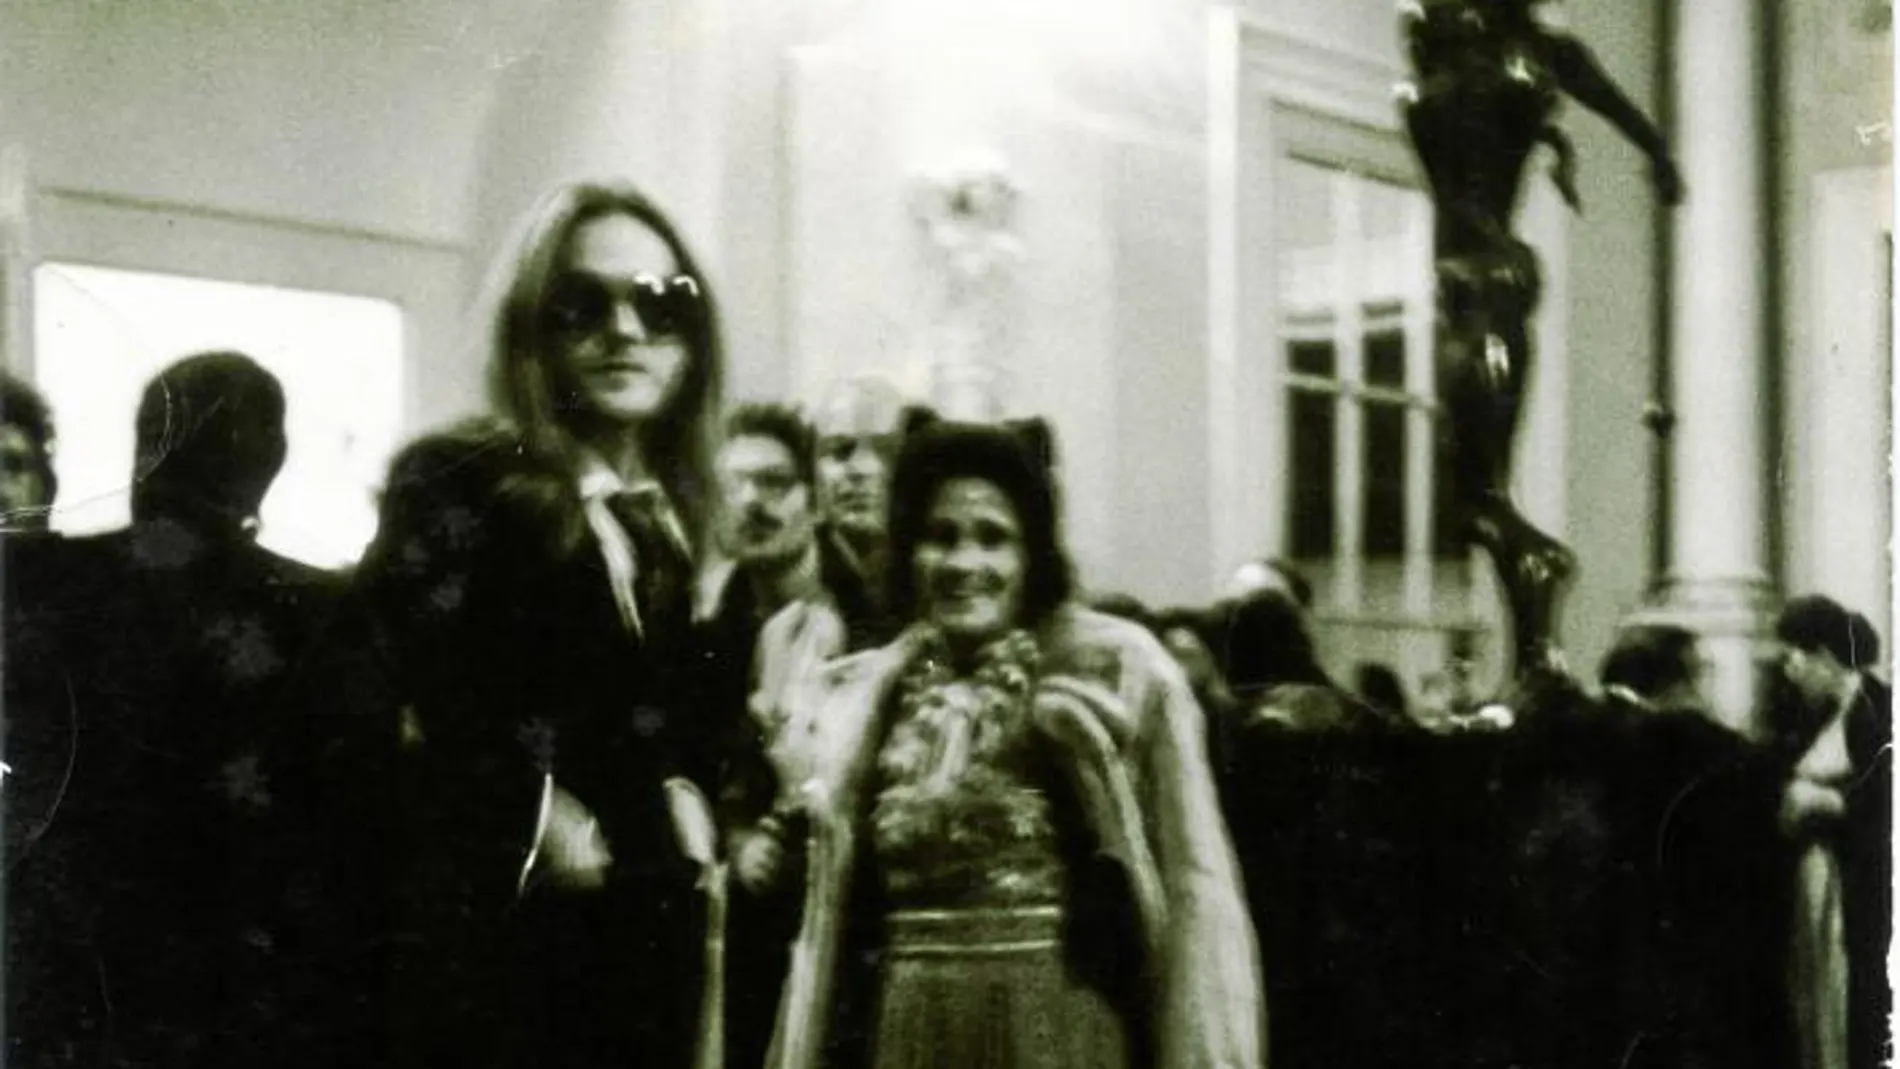 Jeff Fenholt, junto con Gala, en la inauguración del Museo Dalí de Figueras